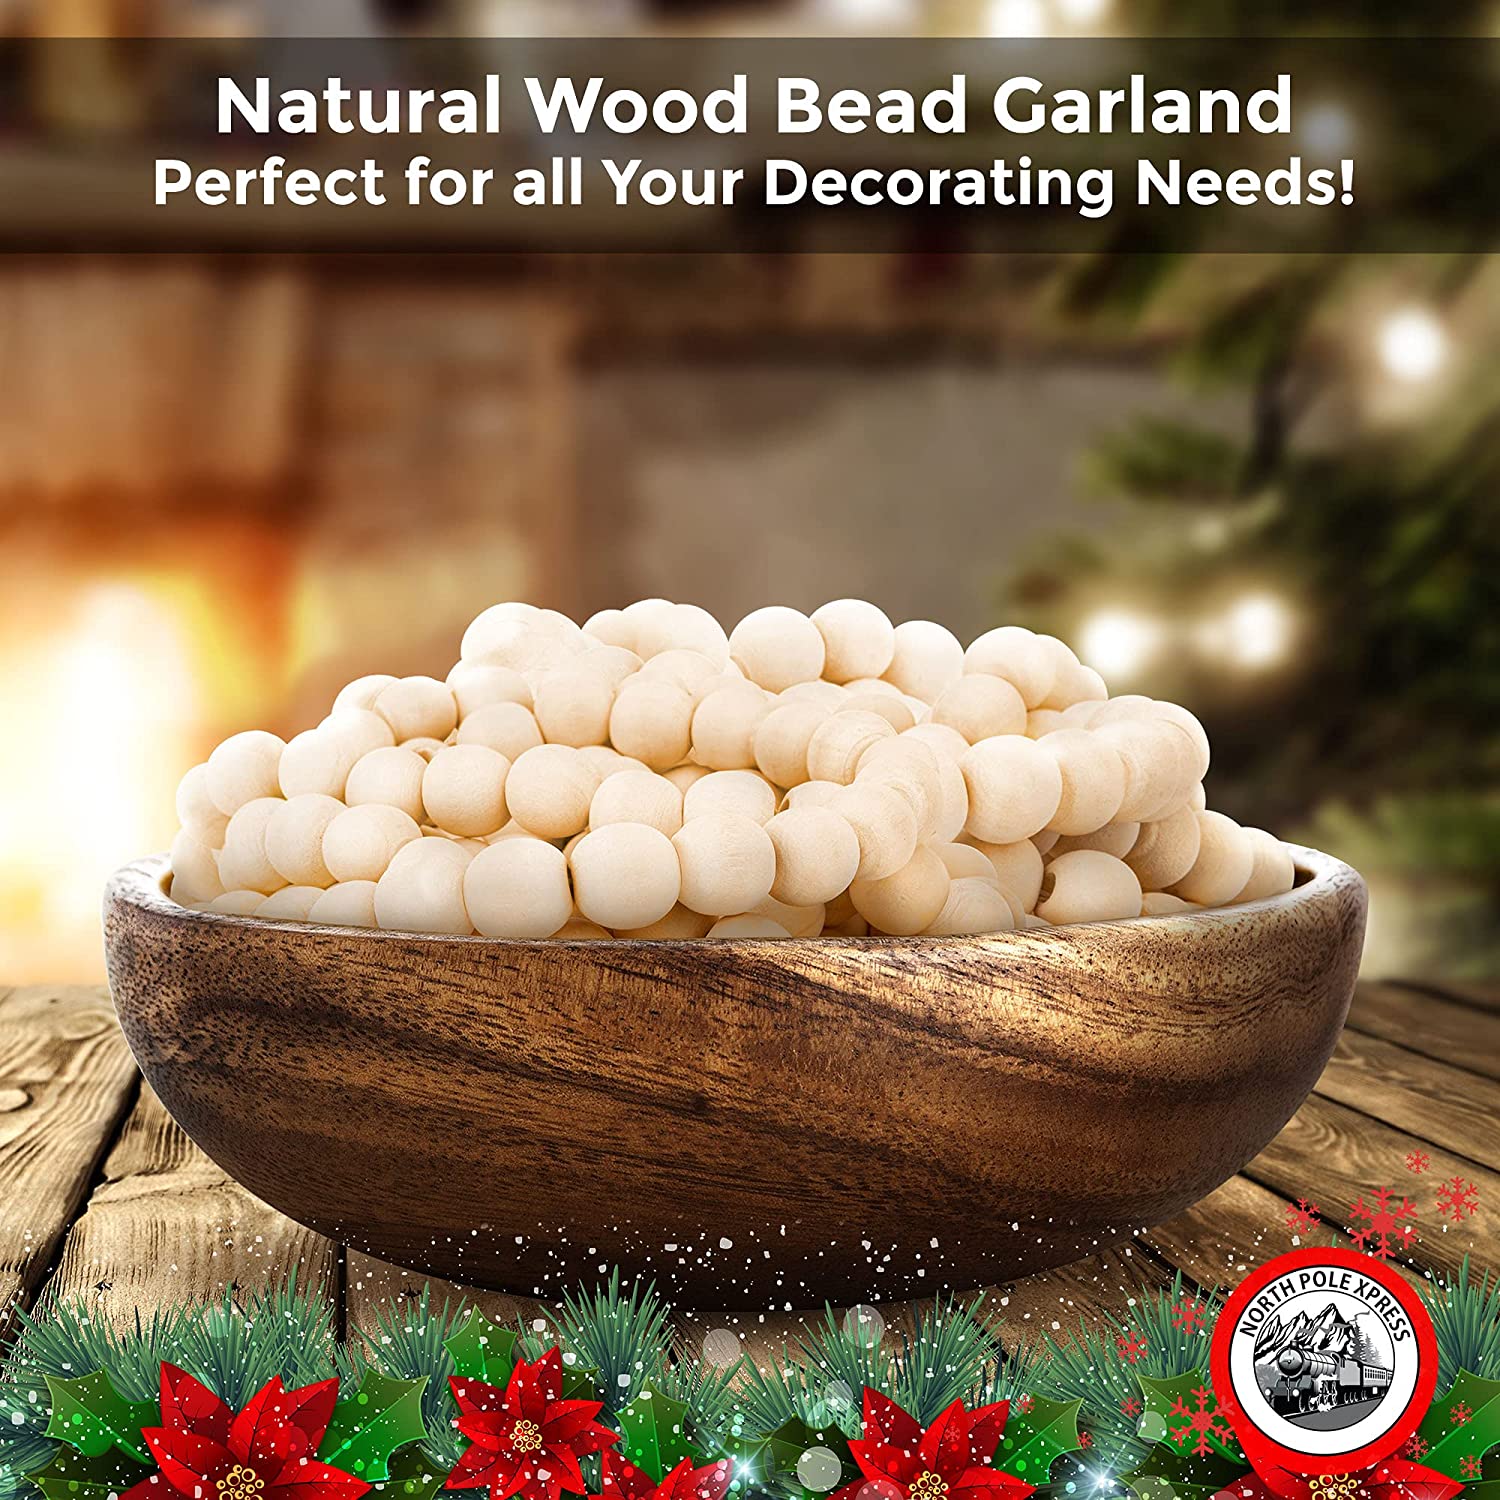 Natural Wood Bead Garland